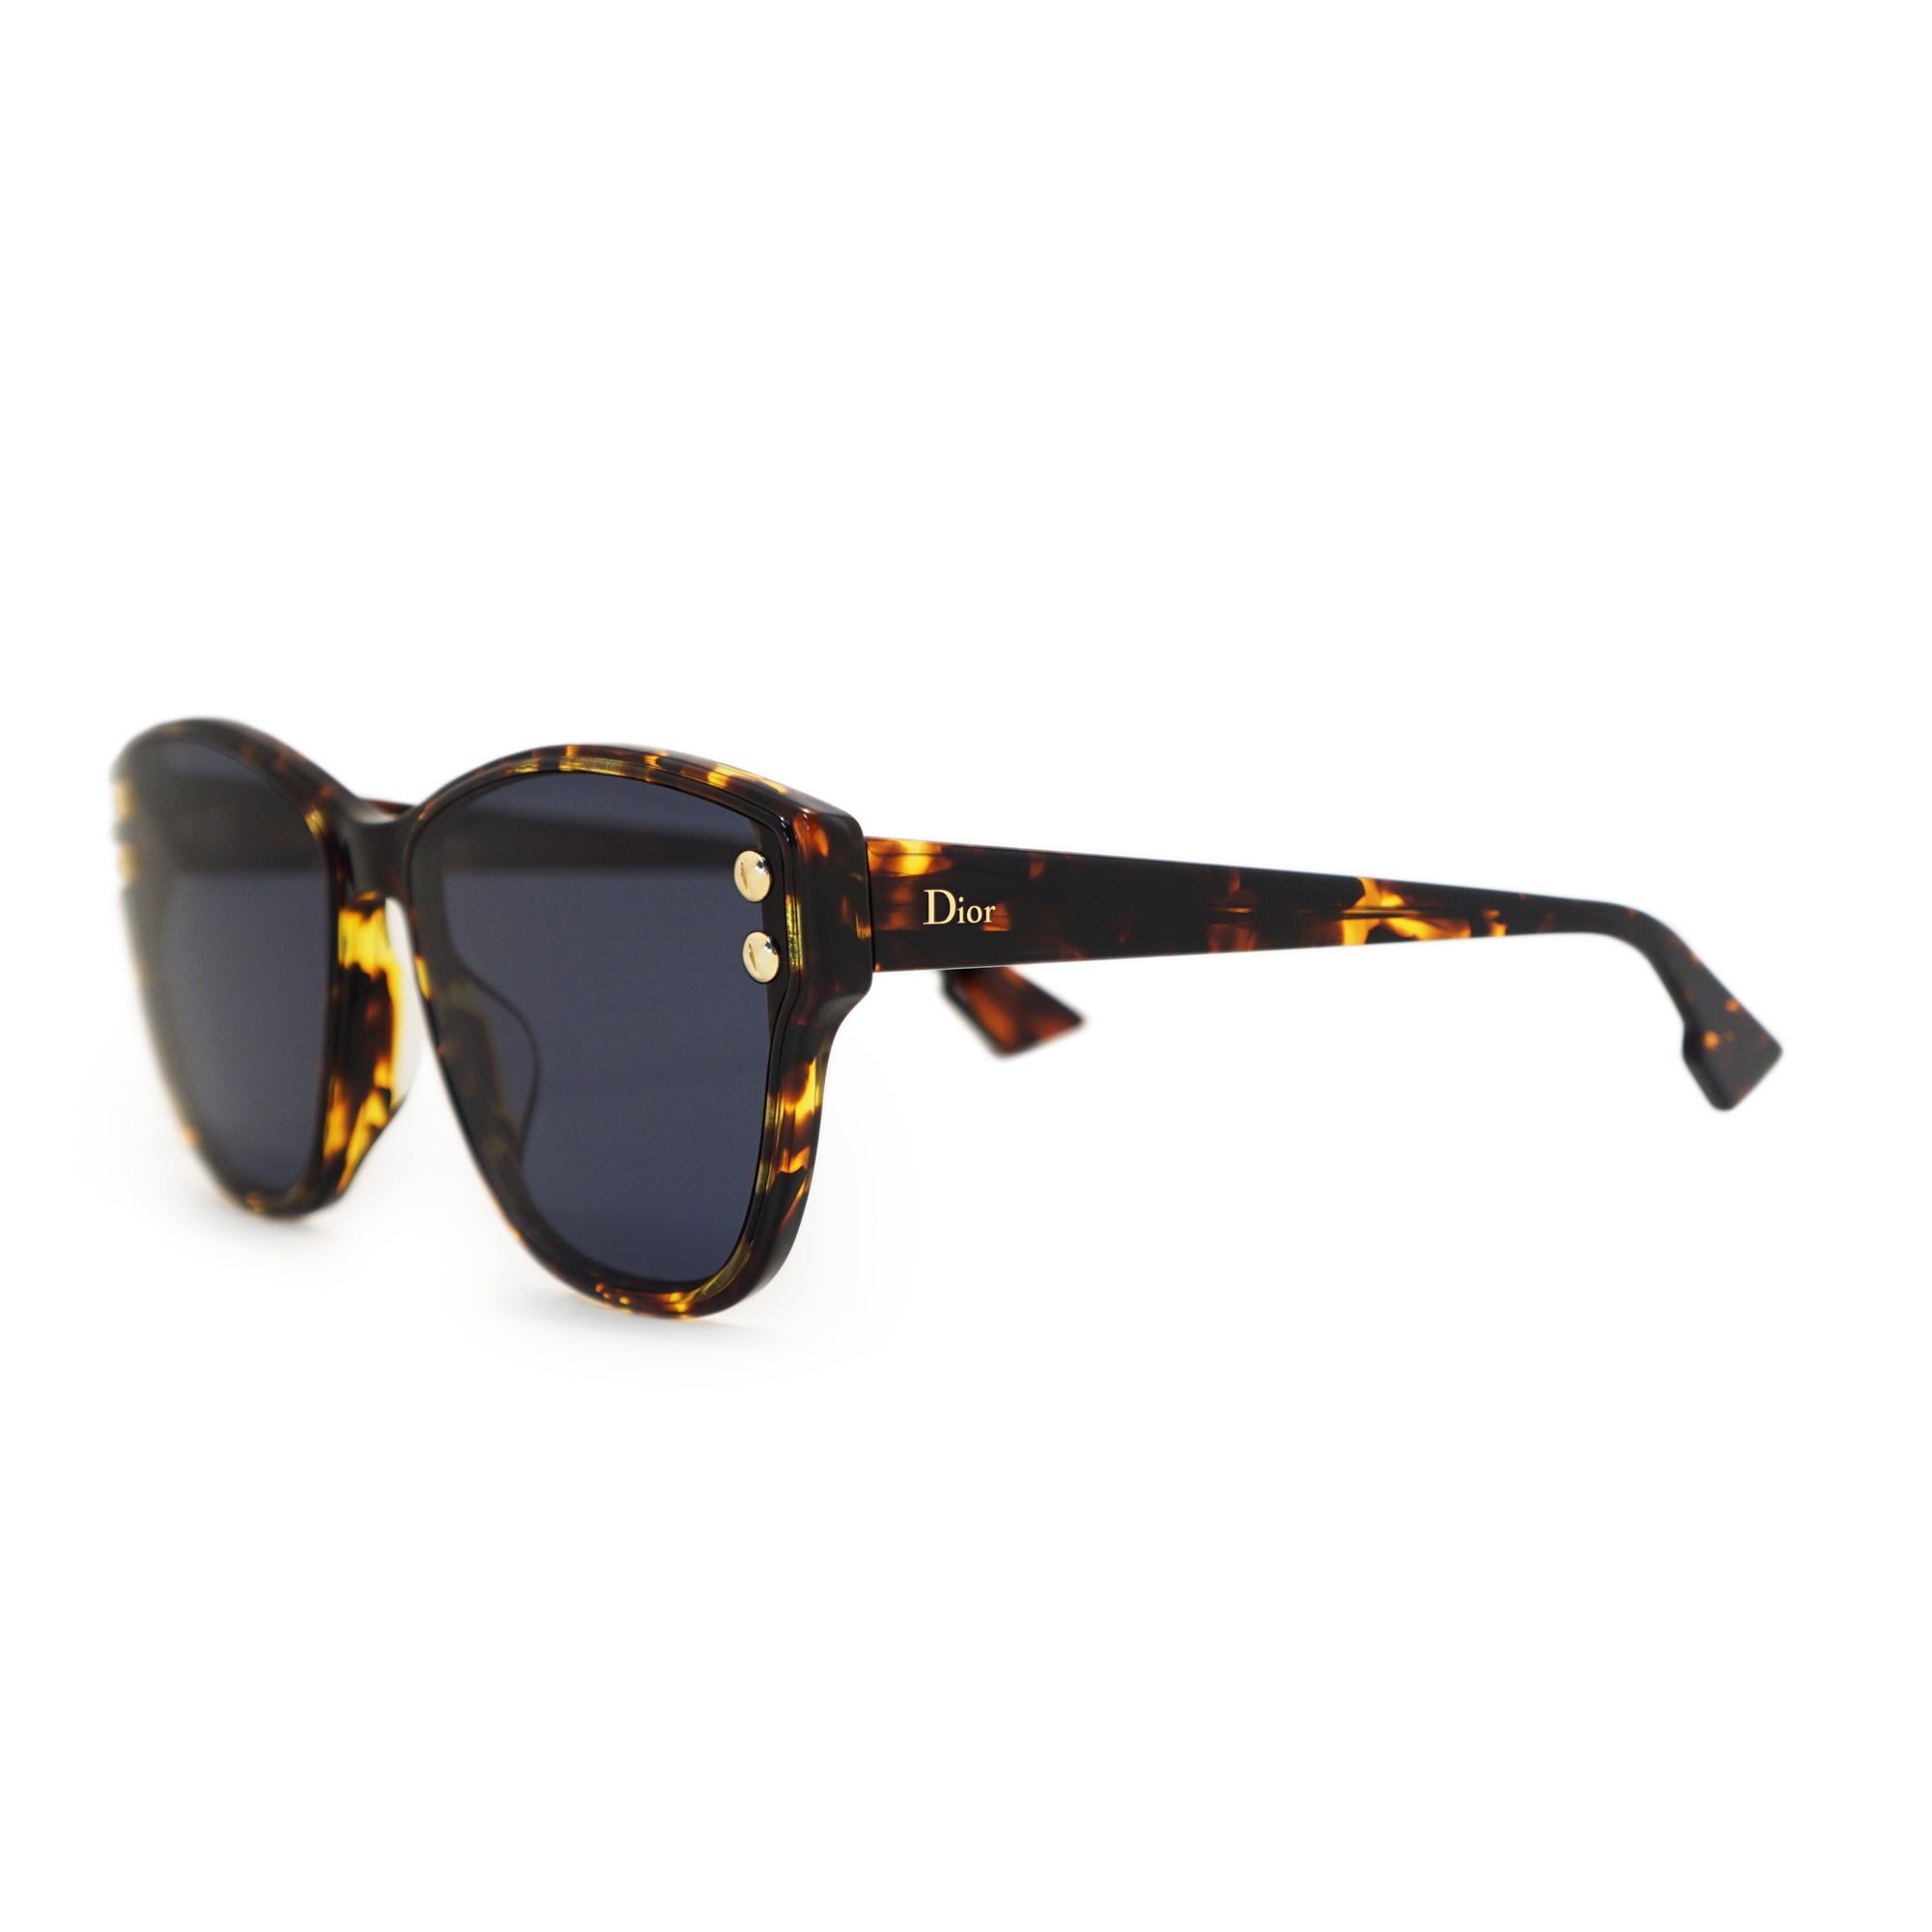 Dior Club M 3 U Sunglasses in Black  Dior Eyewear  Mytheresa